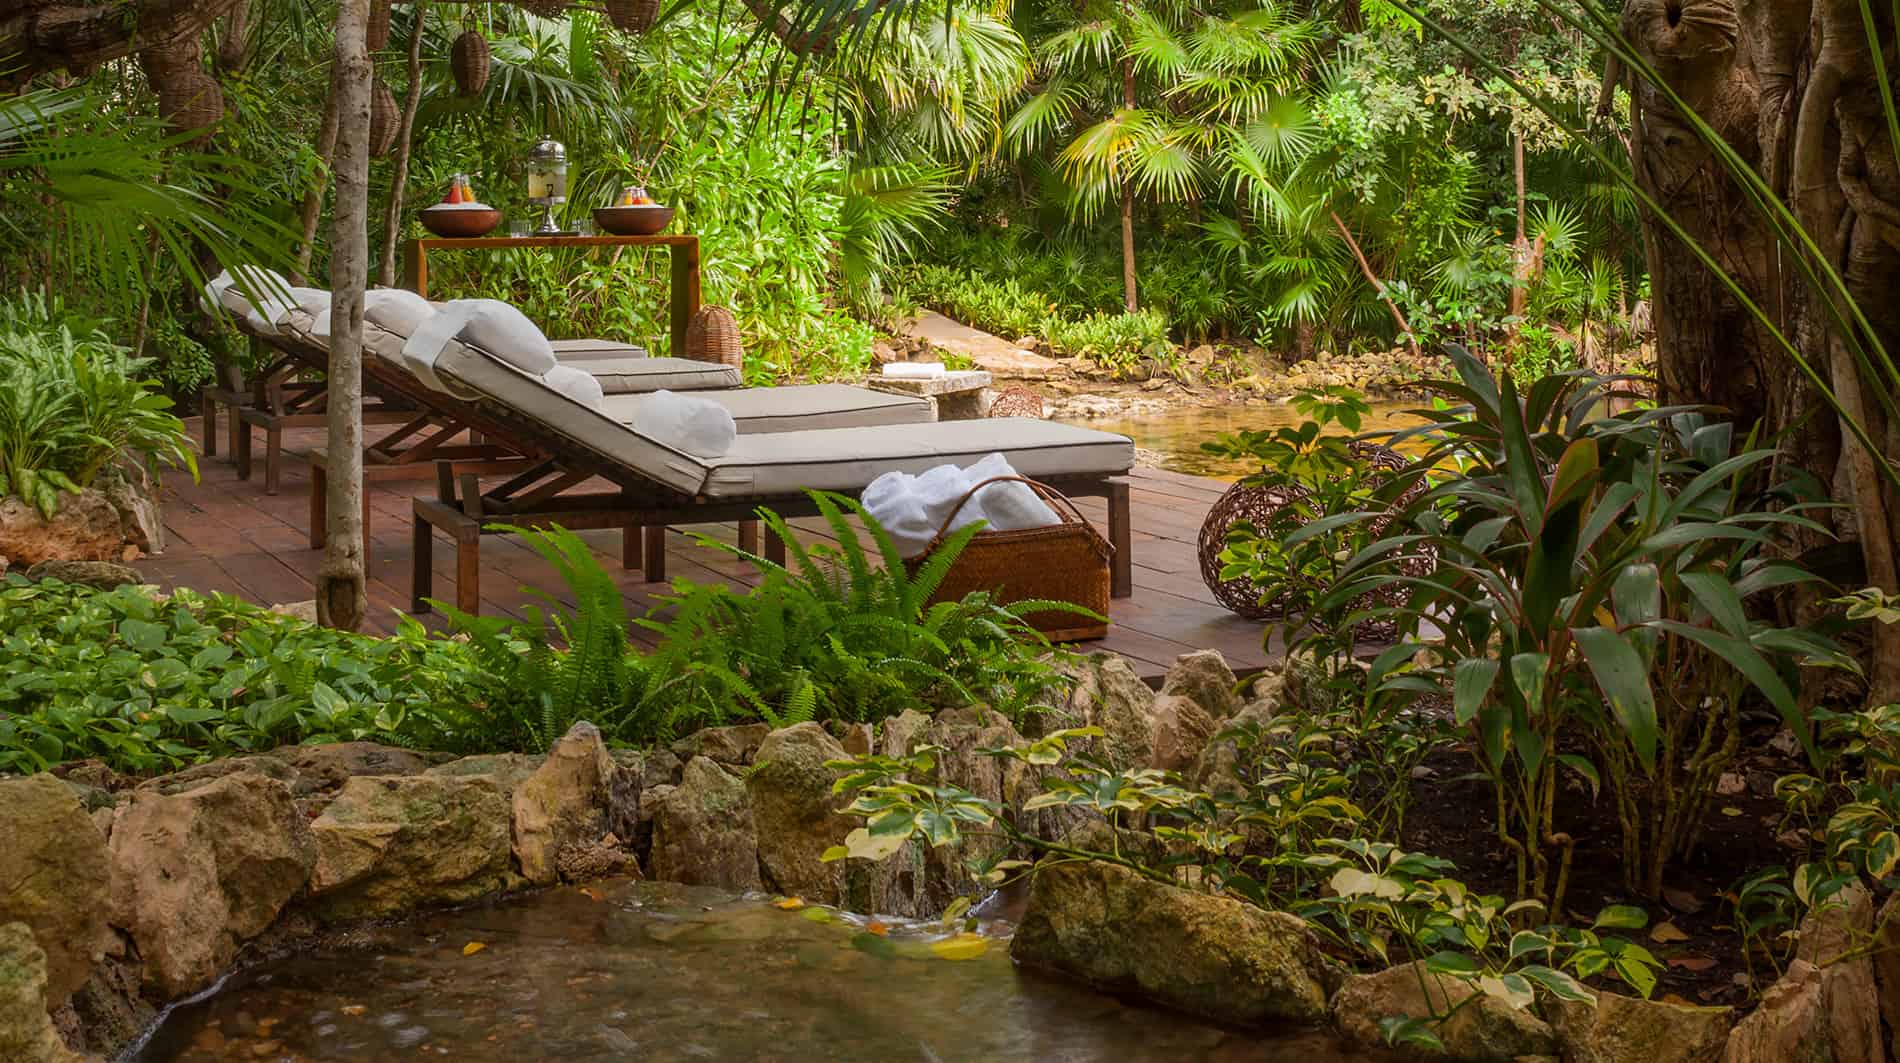 The beautiful spa at Rosewood Mayakoba resort.